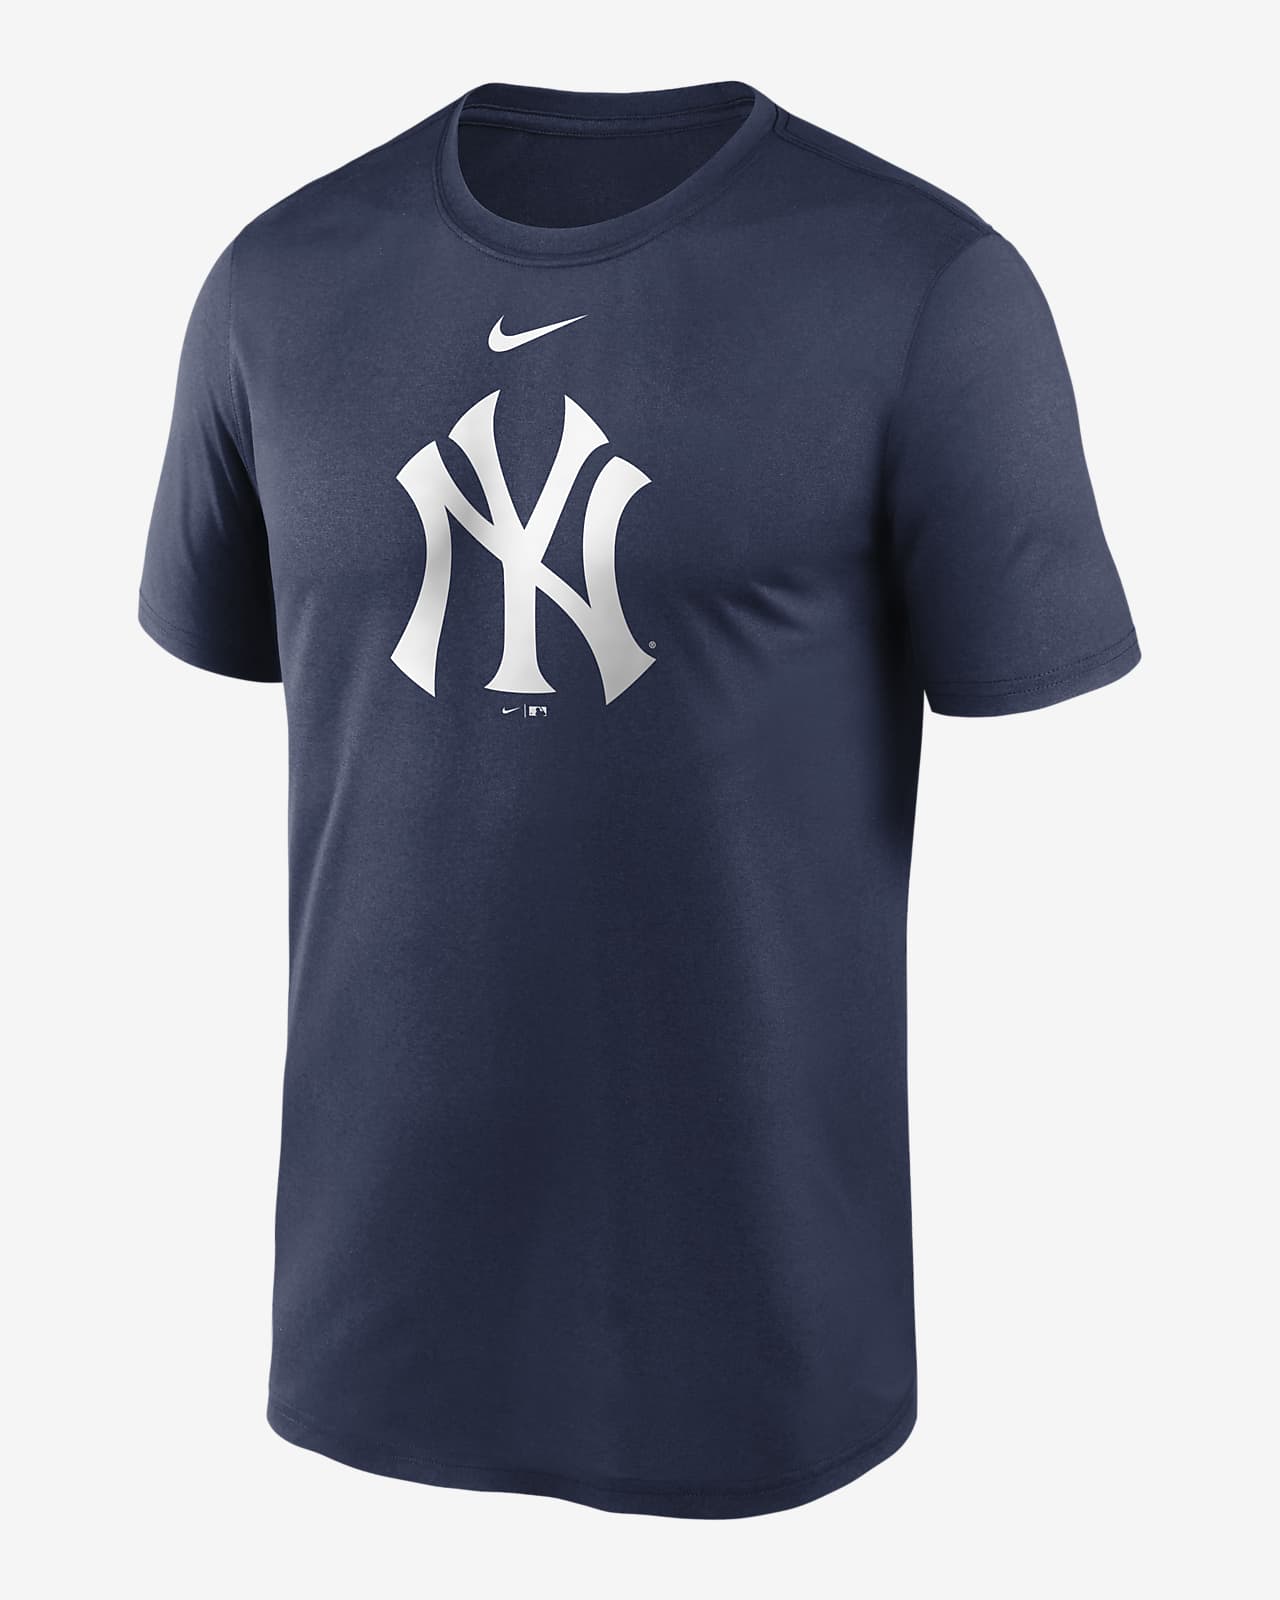 MLB New York Yankees Embroidery TShirt Mens Fashion Tops  Sets Tshirts   Polo Shirts on Carousell